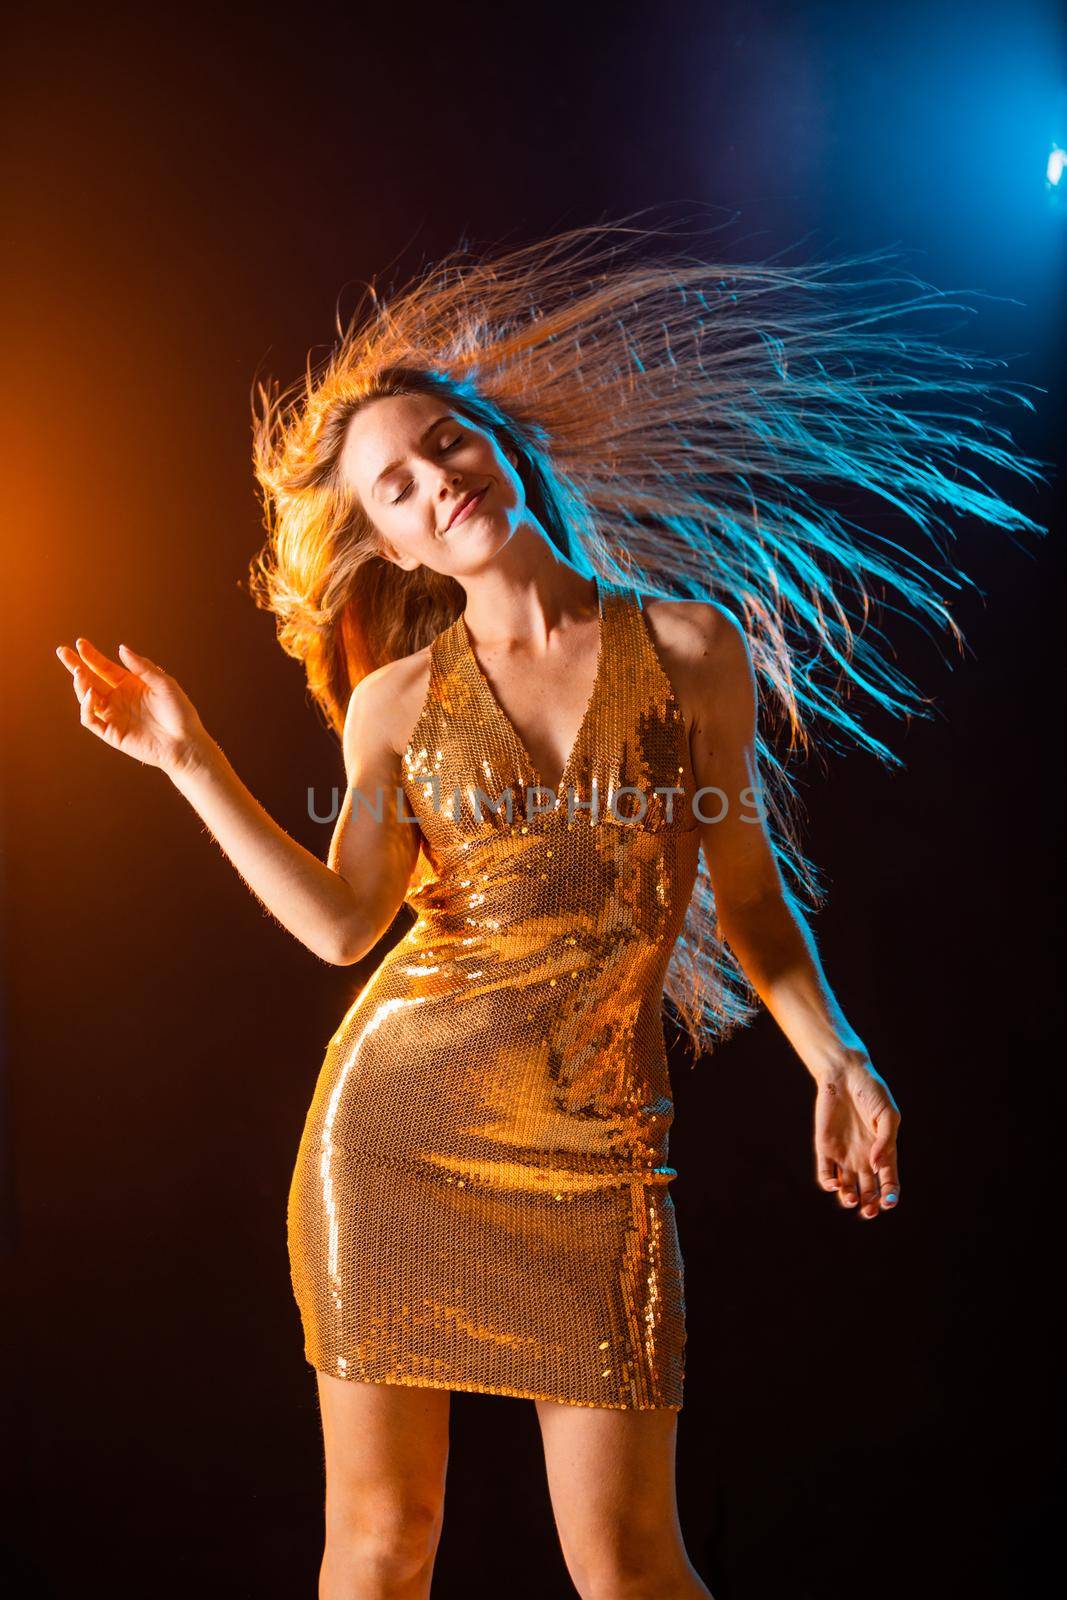 Girl in Golden dress dancing by ALotOfPeople